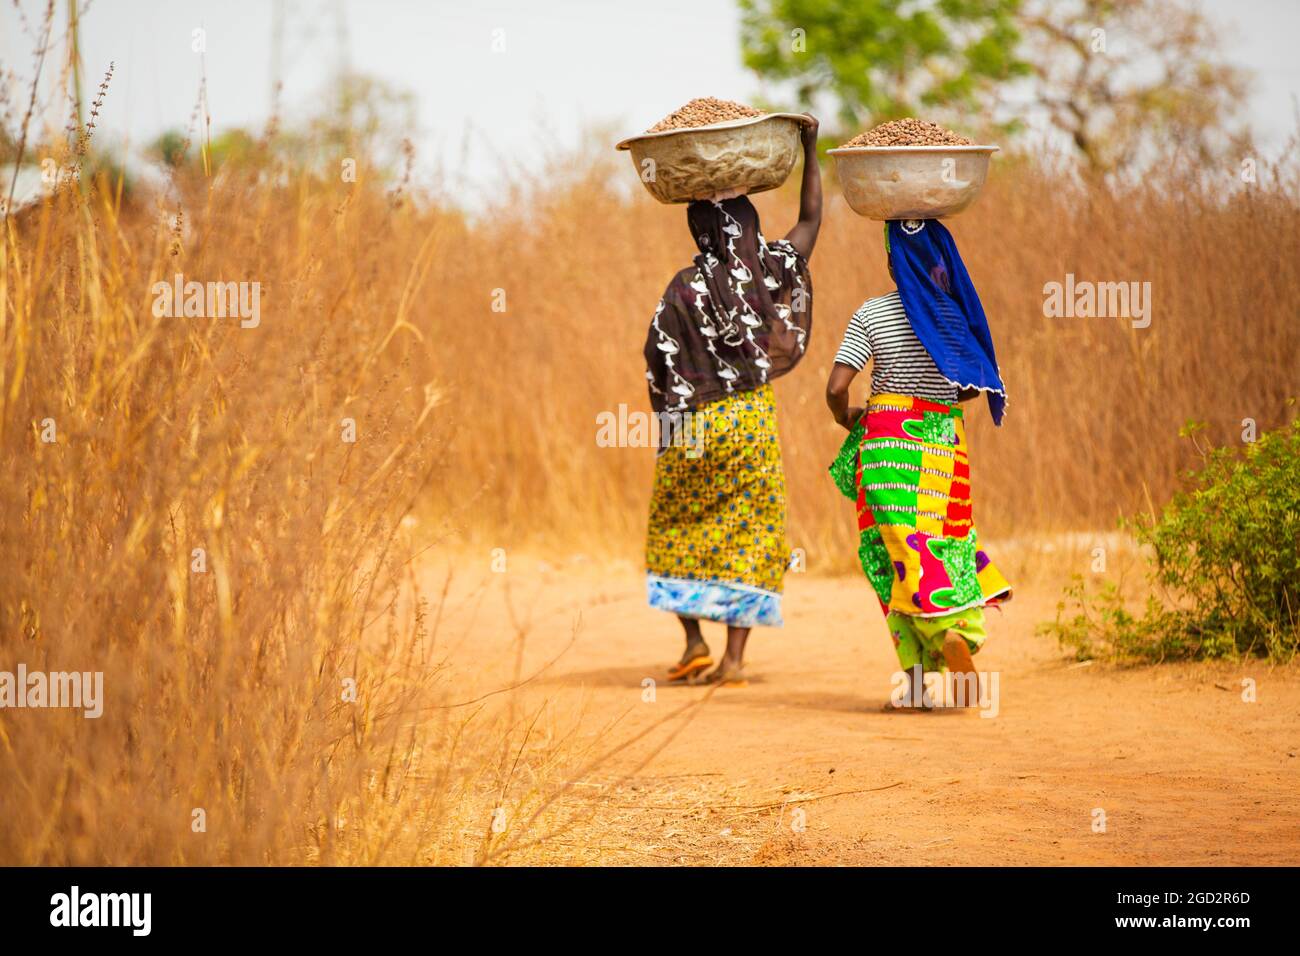 Les femmes du village d'Afrique de l'Ouest portant des vêtements très colorés, portant des bols de nourriture sur leur tête (peut-être des arachides, des boules d'arachide ou un certain type de noix) ca. 21 février 2018 Banque D'Images